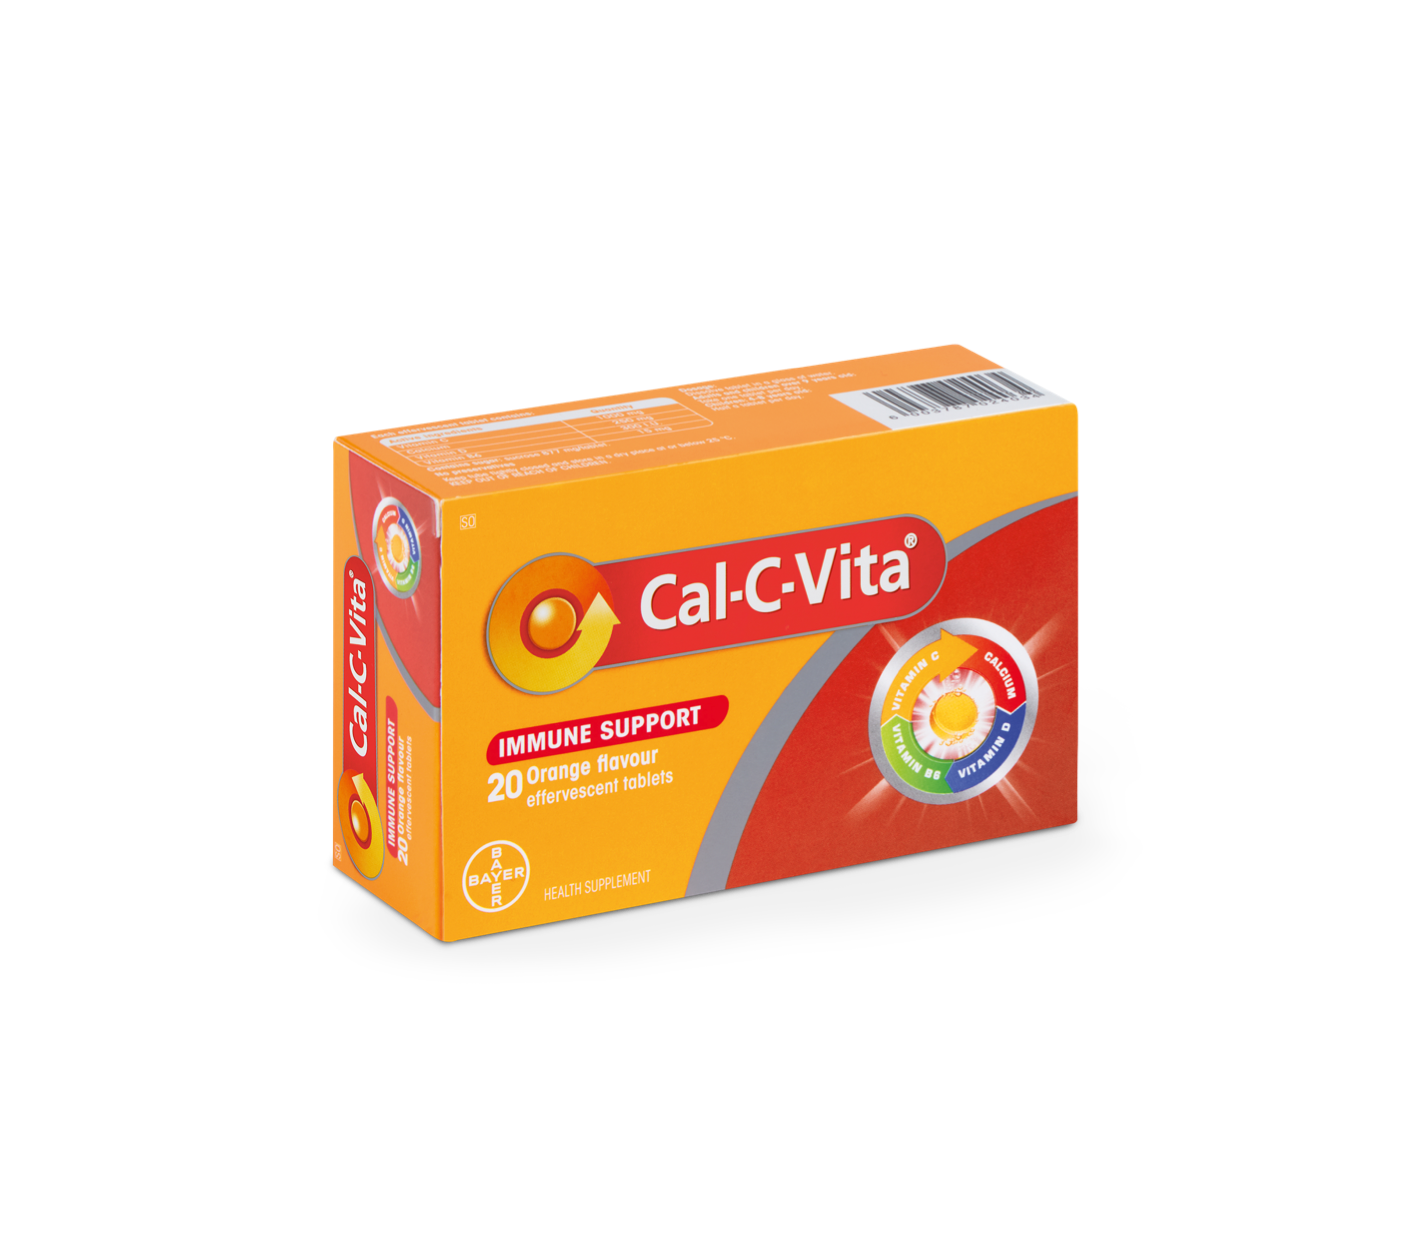 Cal-C-Vita®